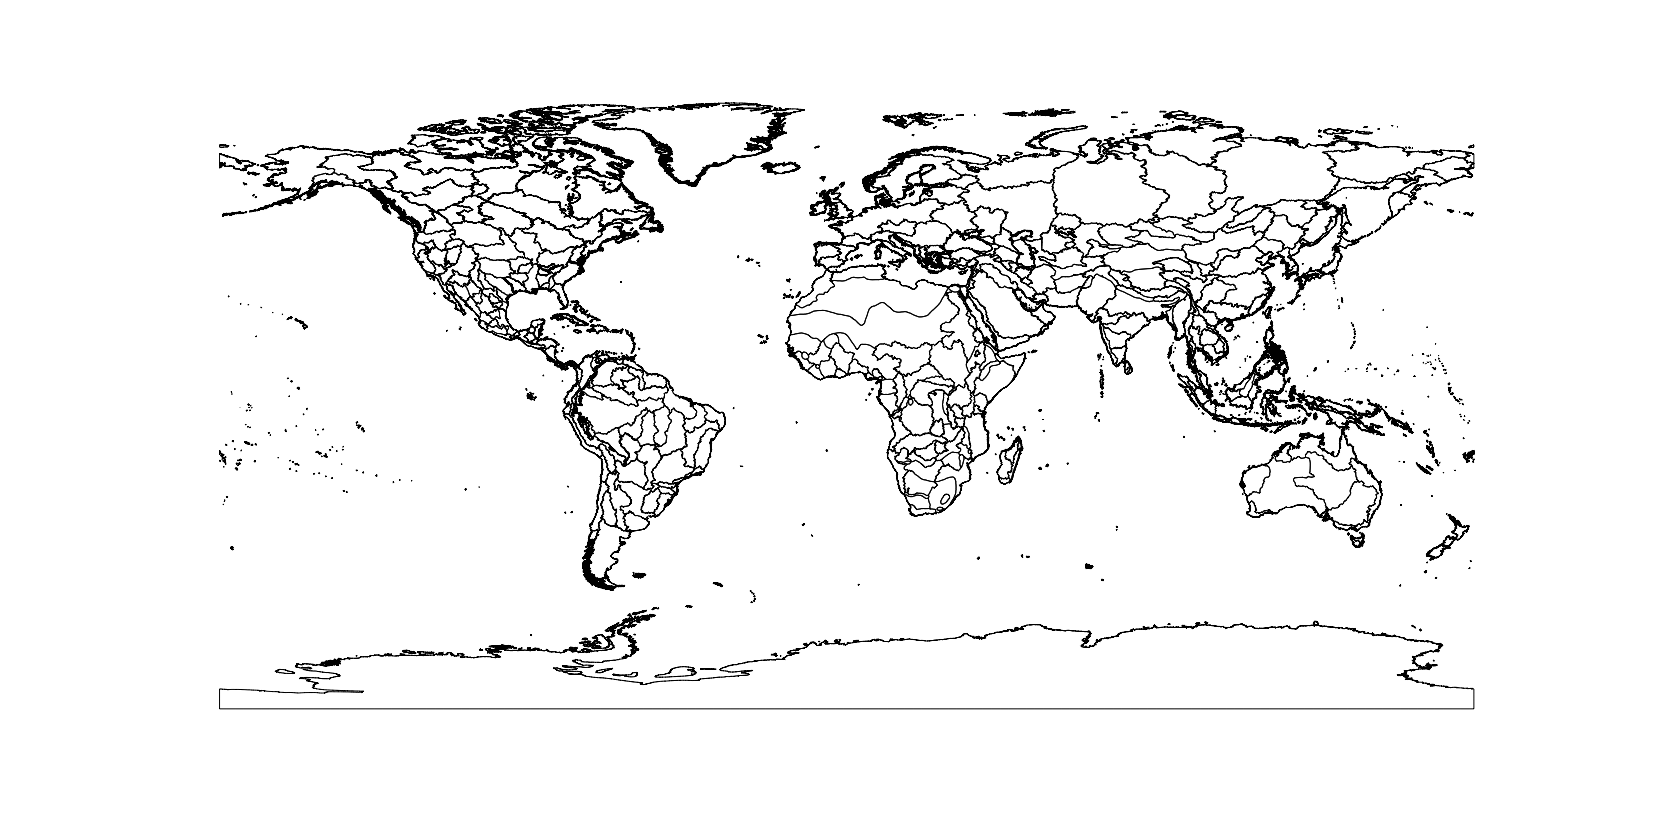 Global ecoregions map